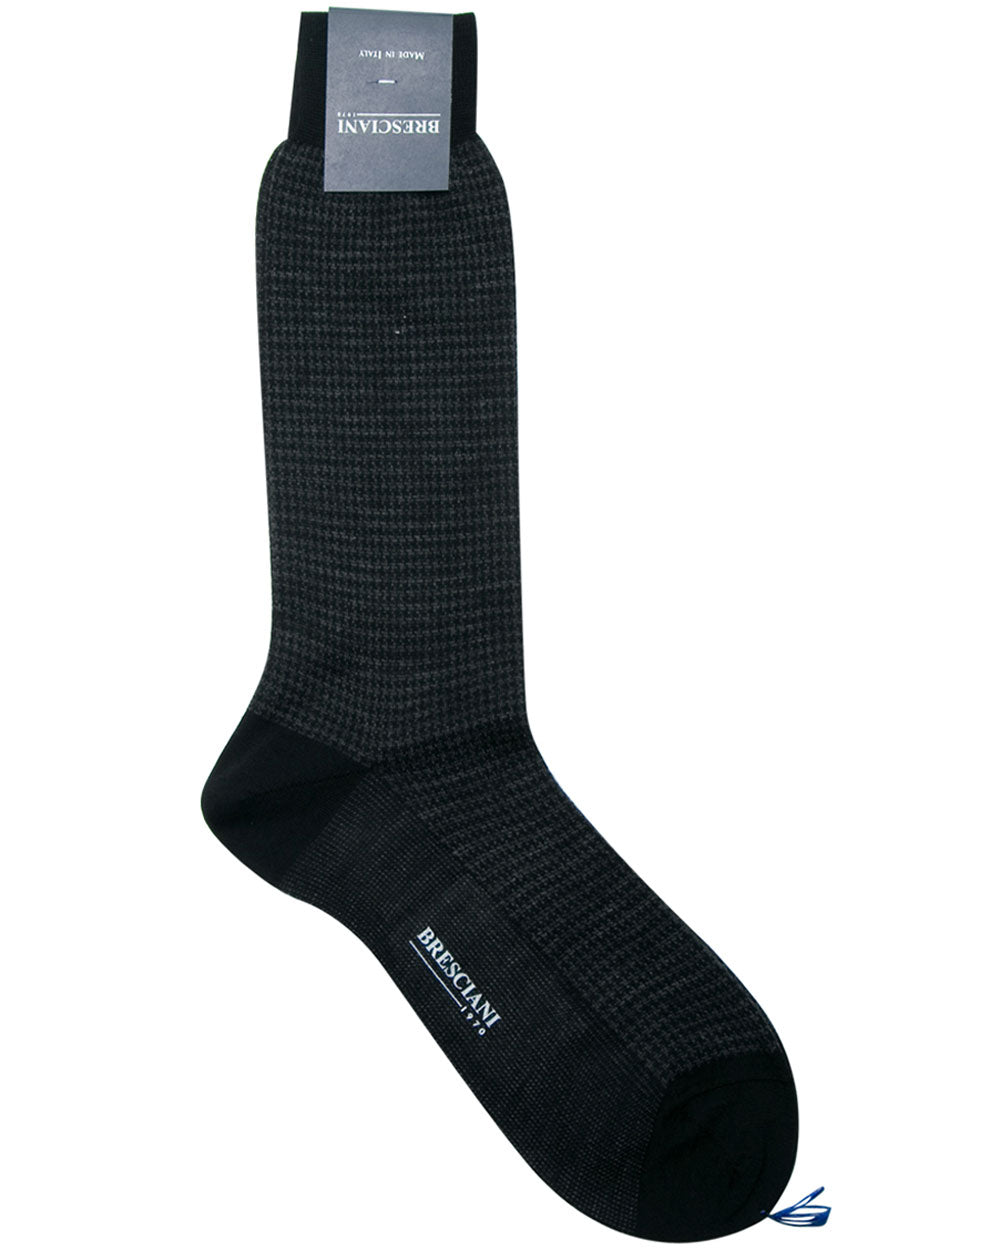 Merino Wool Houndstooth Socks in Black